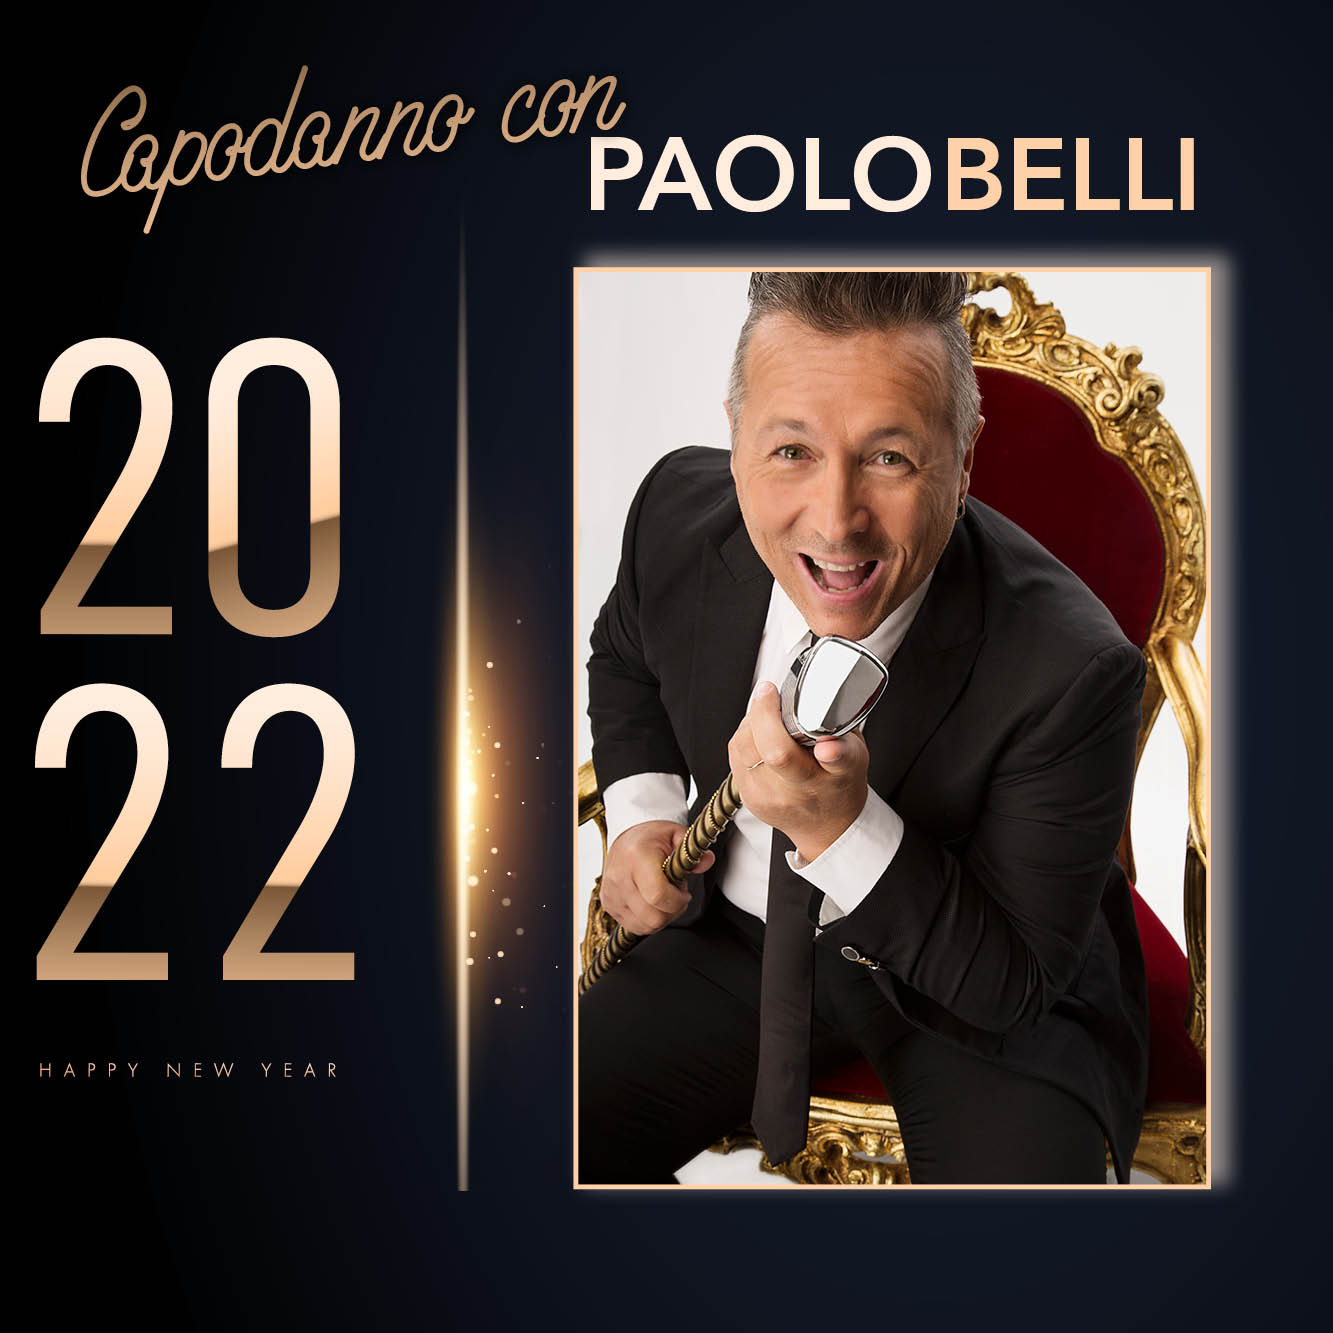 Capodanno: doppio appuntamento con Paolo Belli a Carpi